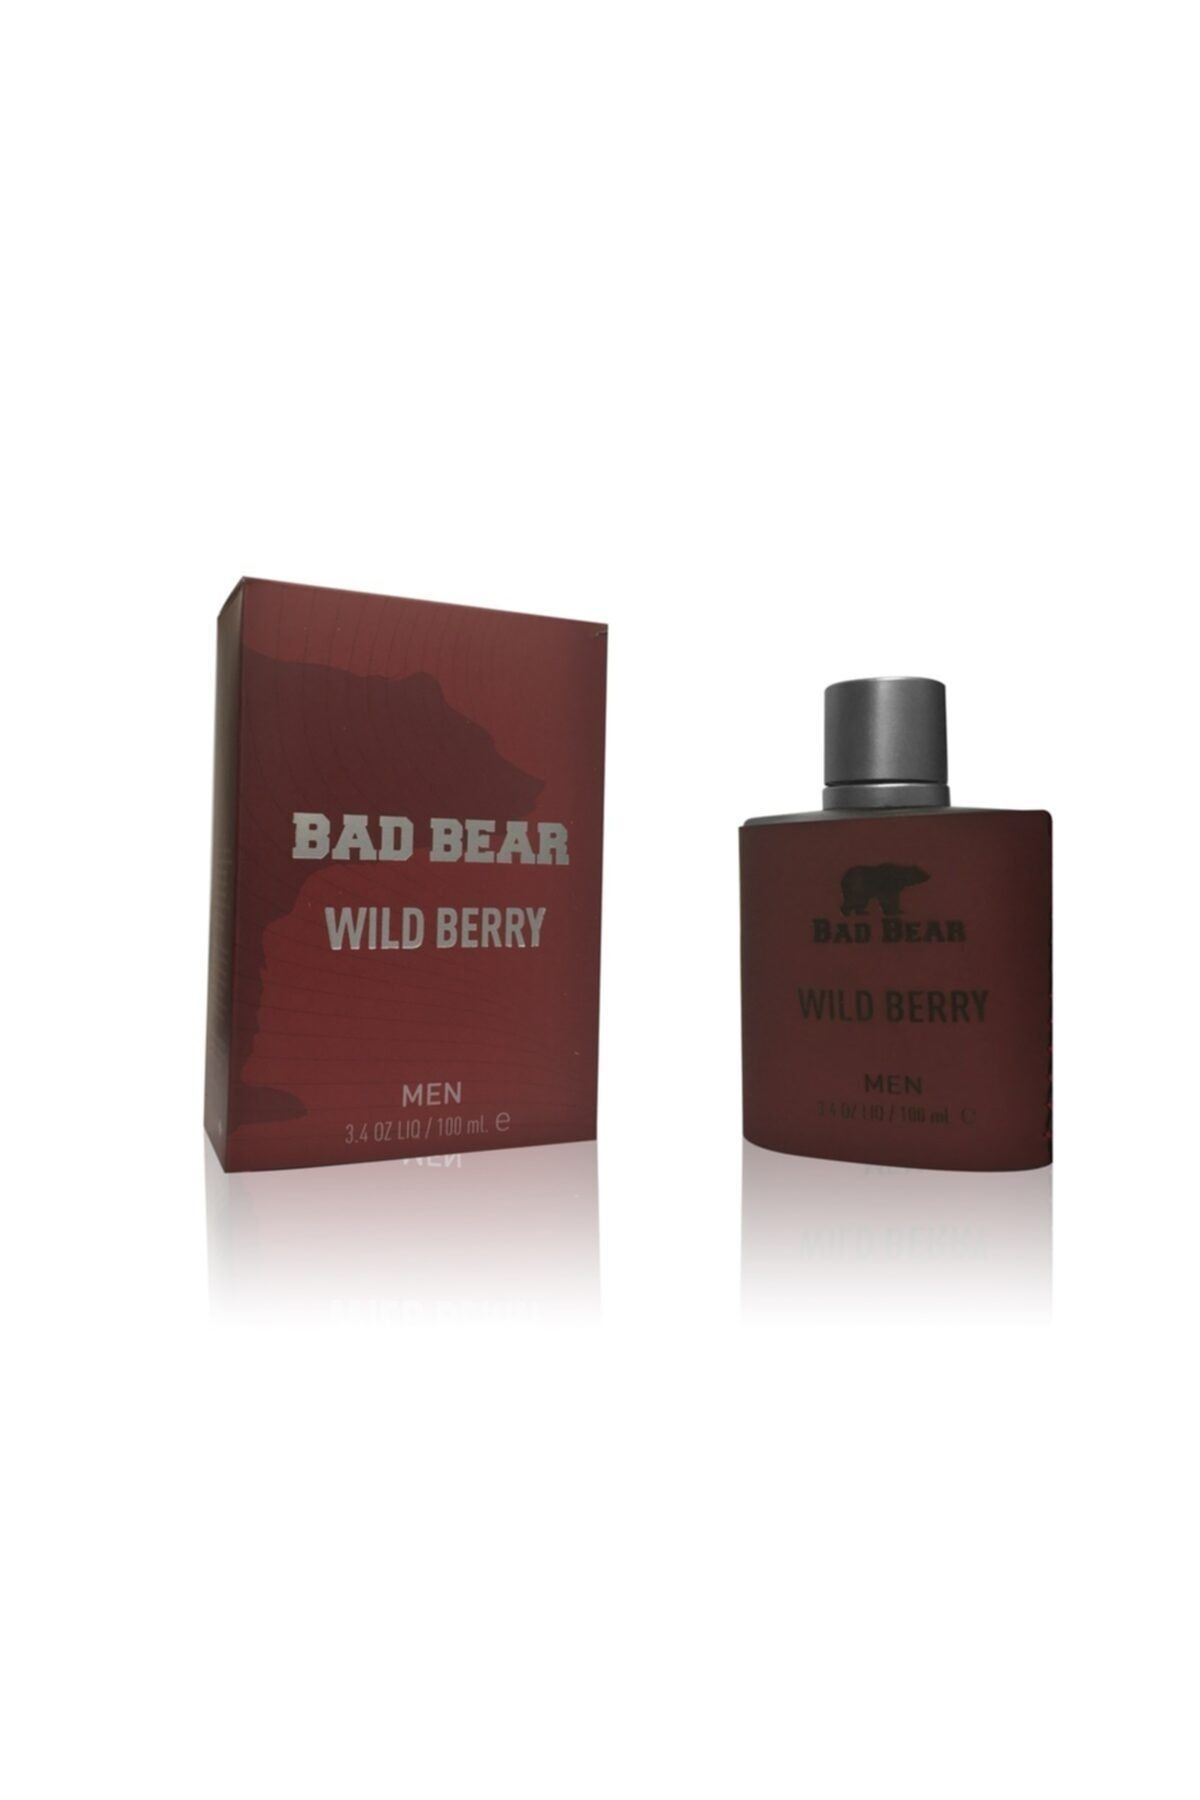 Bad Bear Erkek Parfüm Wıld Berry - Bordo